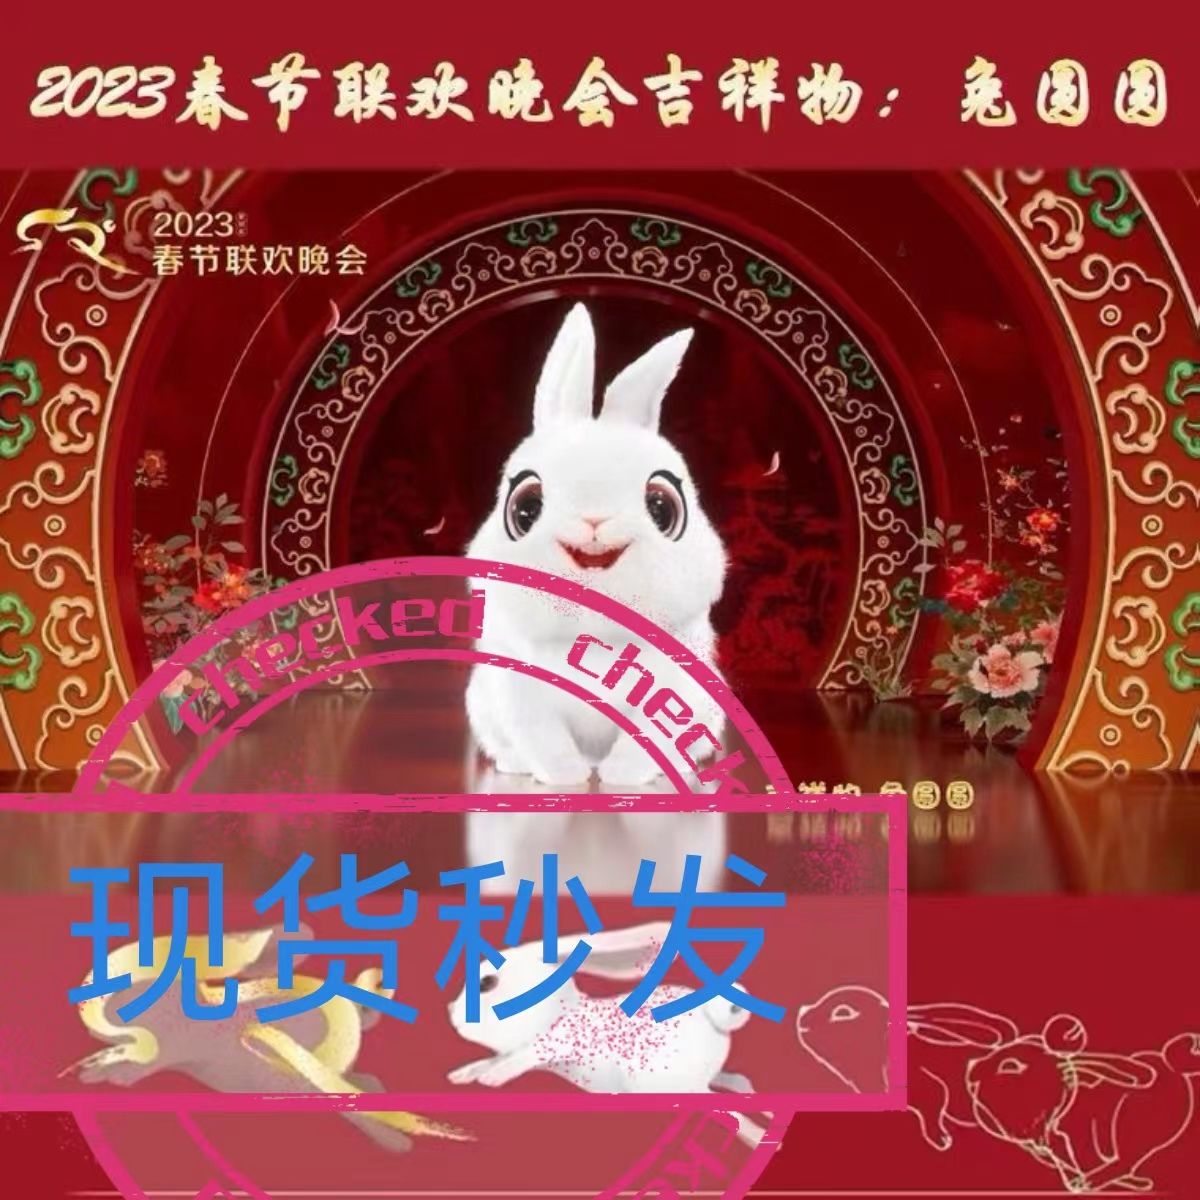 兔圆圆吉祥物爆款兔年2023春节联欢晚会毛绒公仔礼盒装现货秒发